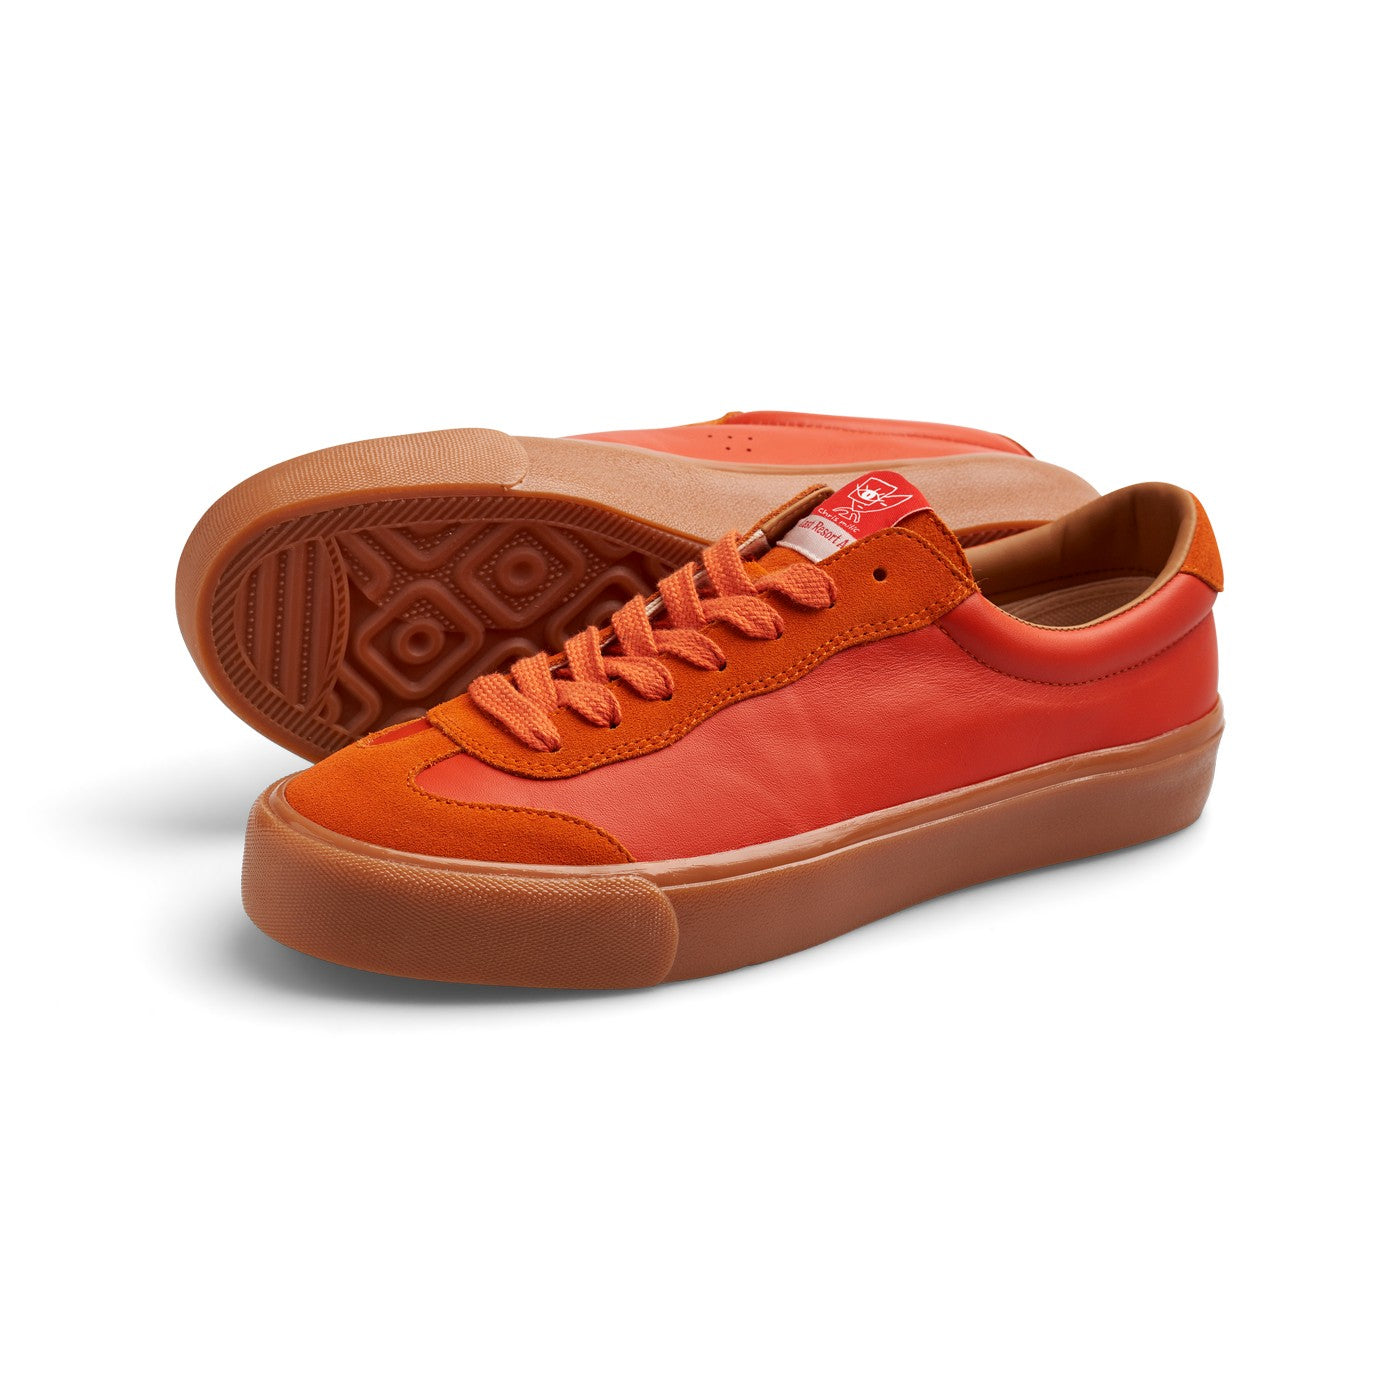 VM004-Milic Leather/Suede (Duo Orange/Gum) – Last Resort AB